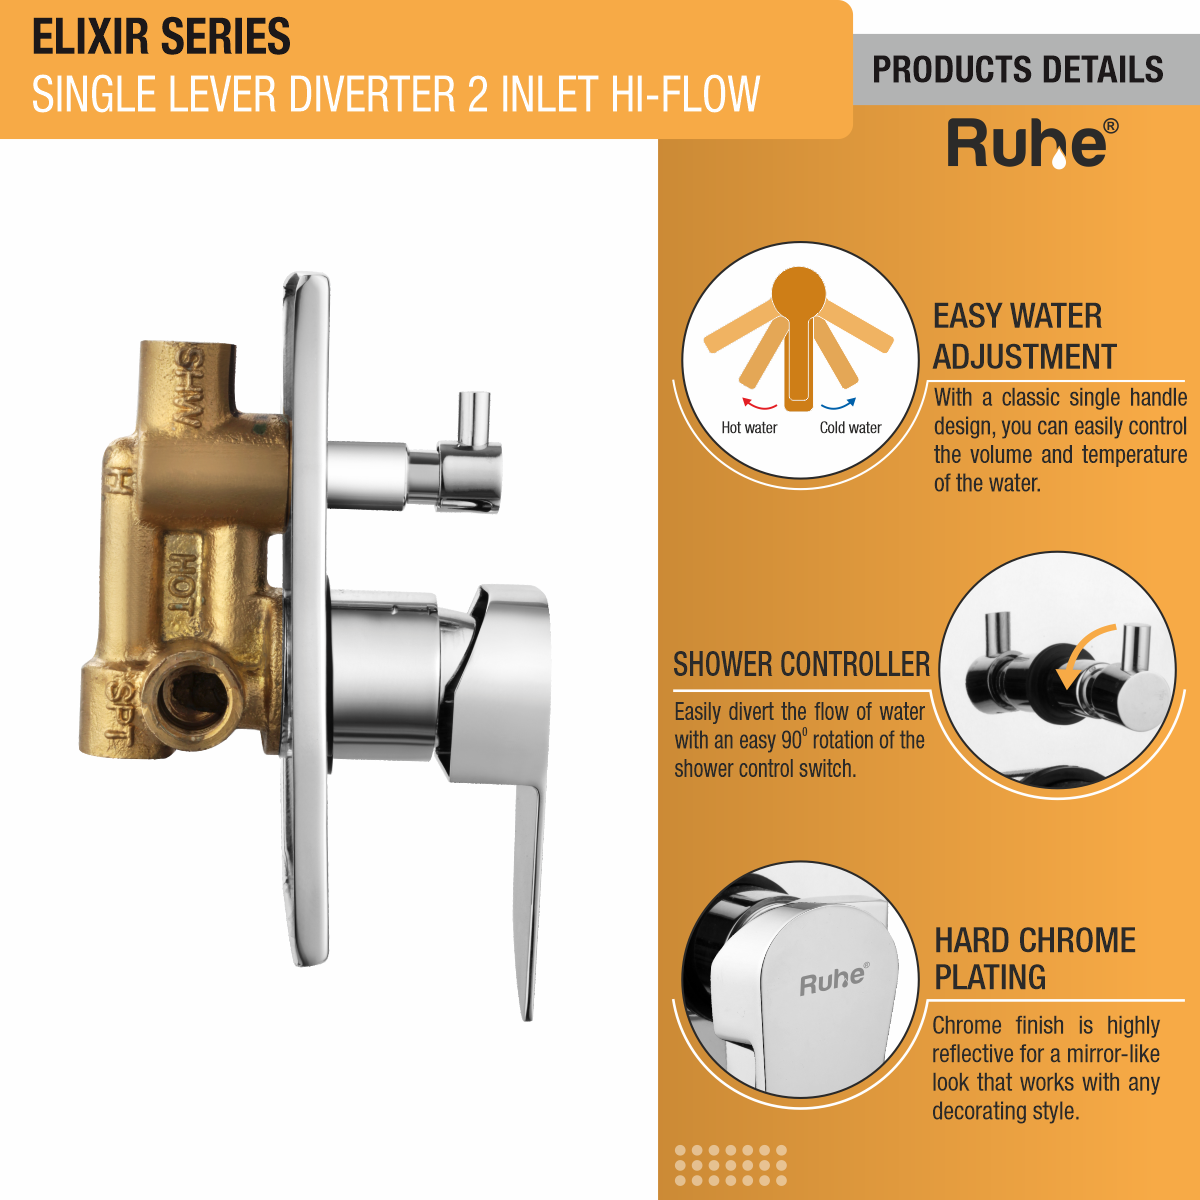 Elixir Single Lever 2-inlet Hi-Flow Diverter (Complete Set) product details